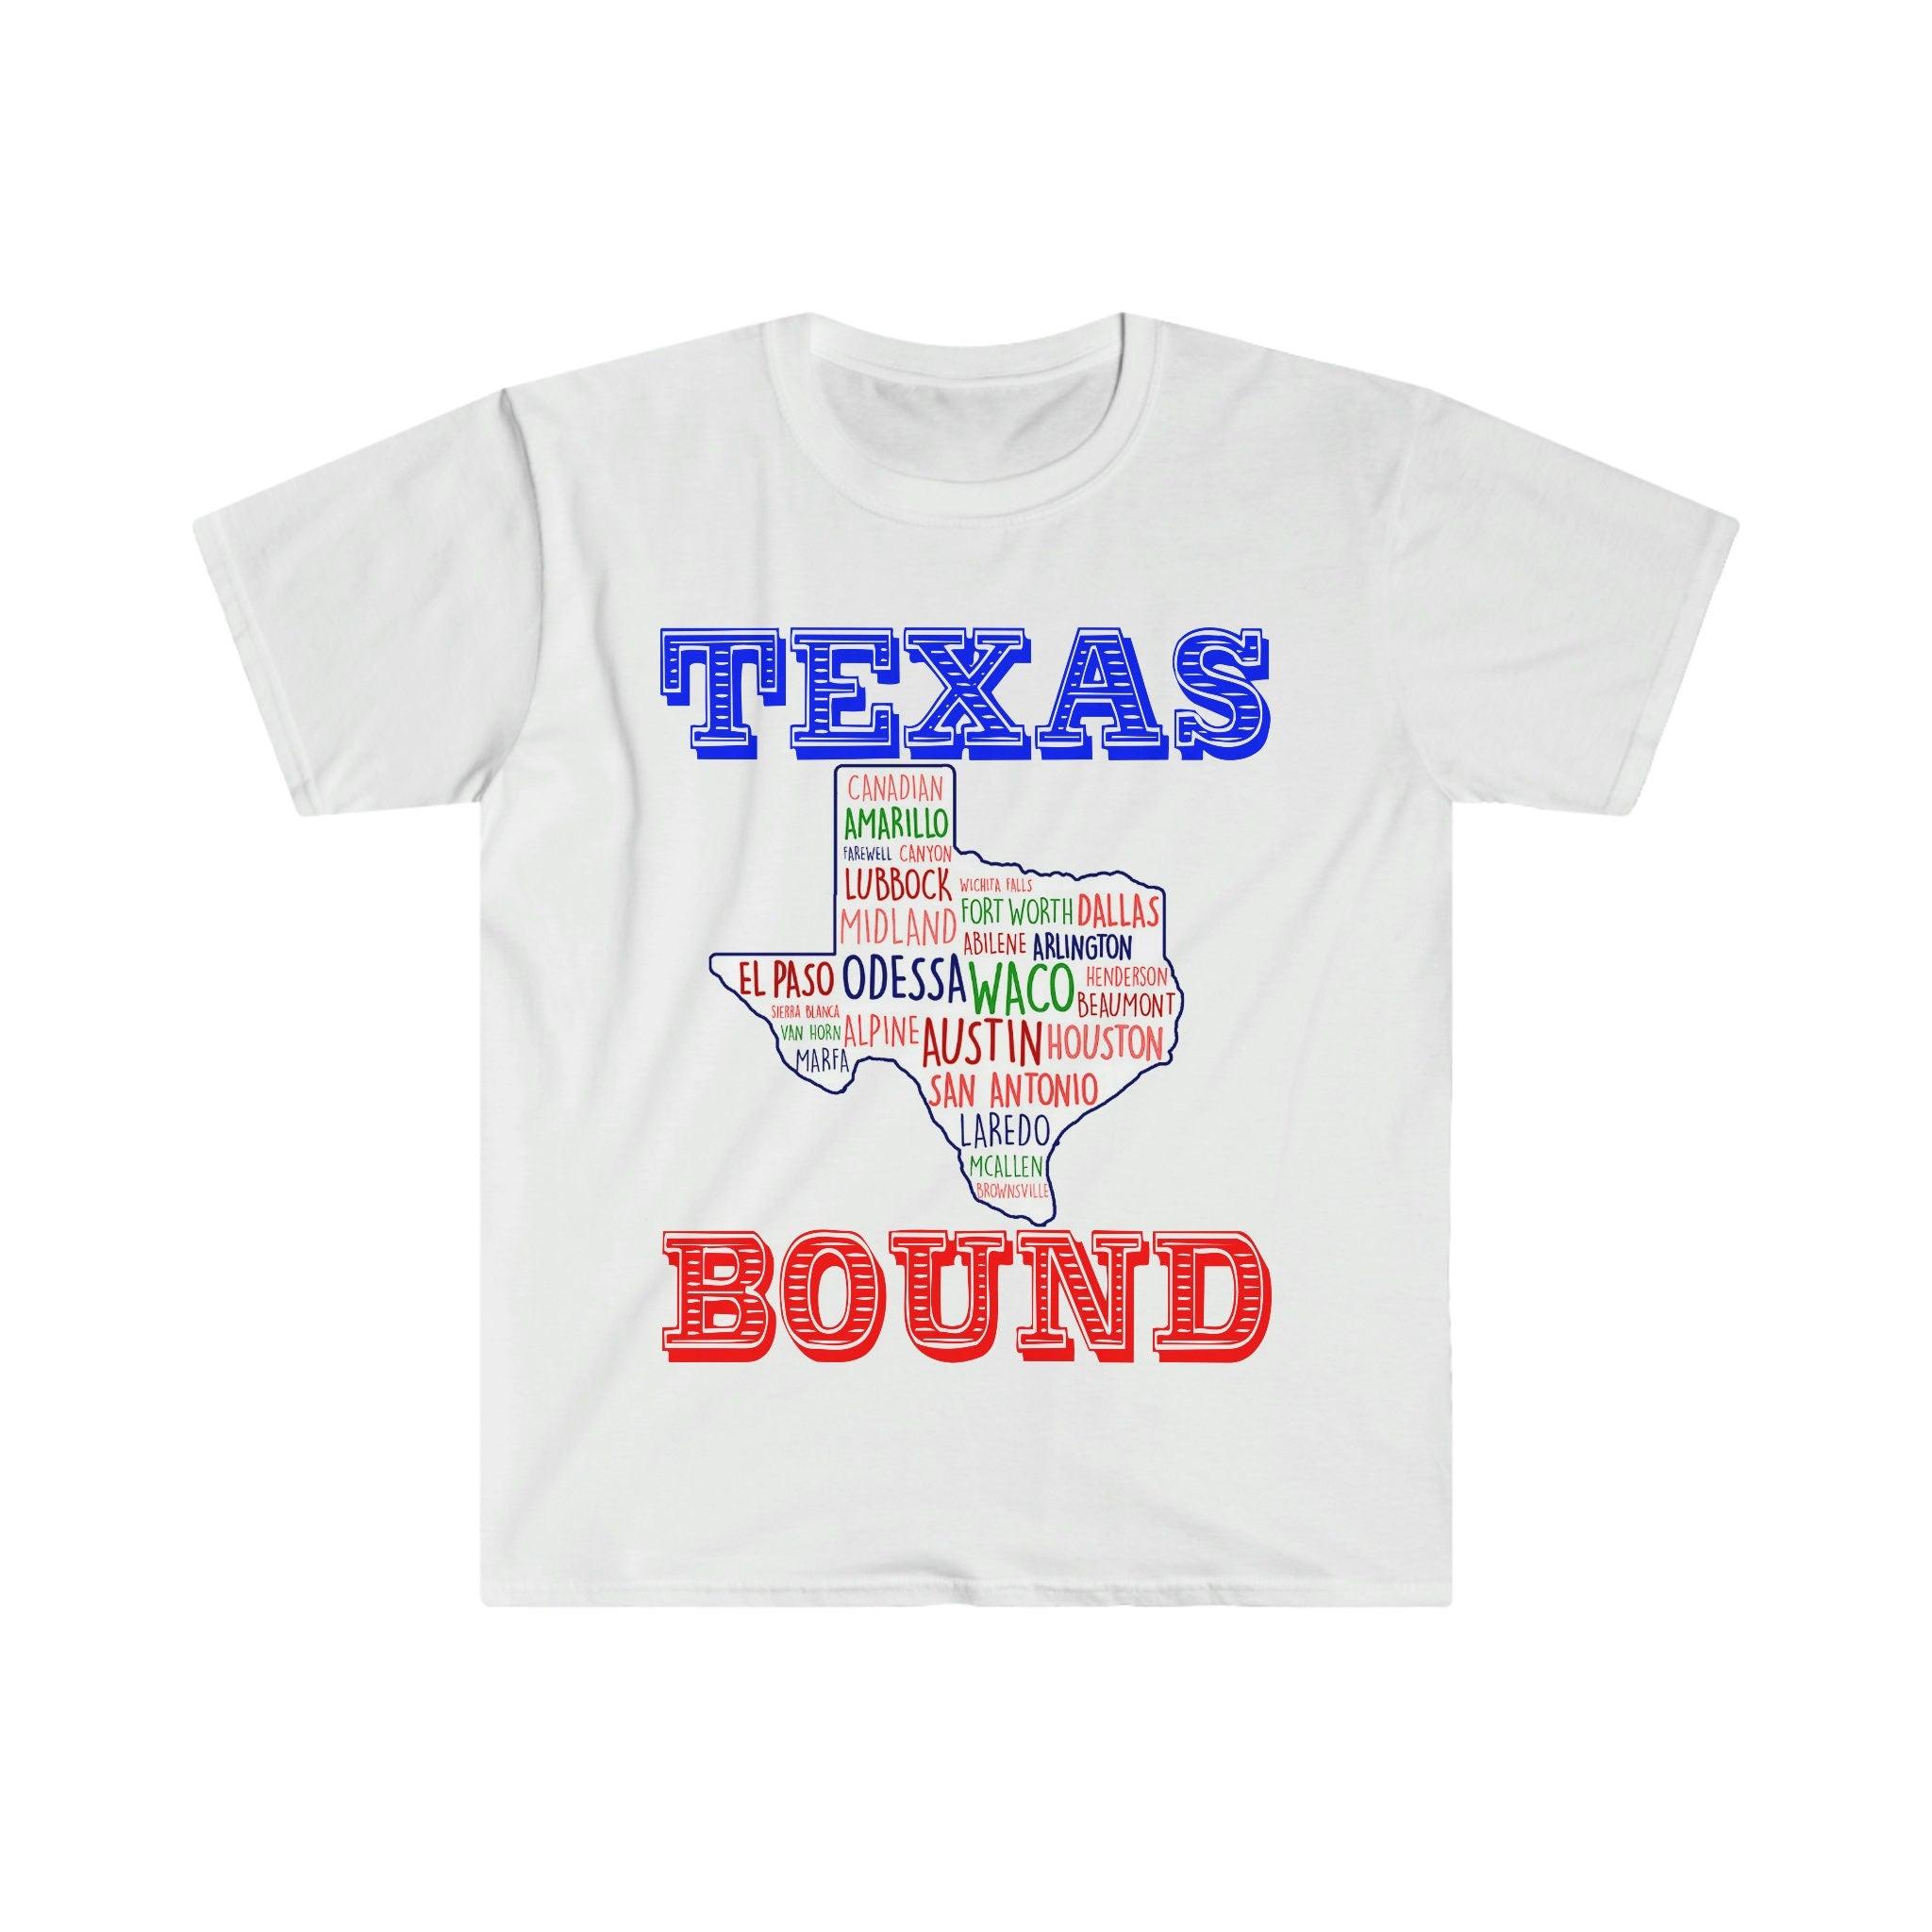 Con destino a Texas | Camisetas de Texas Places /Camisetas con mapas de Texas, Mudarse a Austin, Bienvenido a Texas Gift, Texas Bound, Nuevo en Texas, Mudarse a DFW Beat biden aumento de impuestos, Plan fiscal de Biden, liberal costero, Houston, mudarse a austin, Mudarse a DFW, Mudarse a Texas, Mudarse a Texas Taza, Nuevo en Texas, Republicano, Camiseta, camisetas, Texas con destino, chica de Texas, republicano de Texas en - plusminusco.com